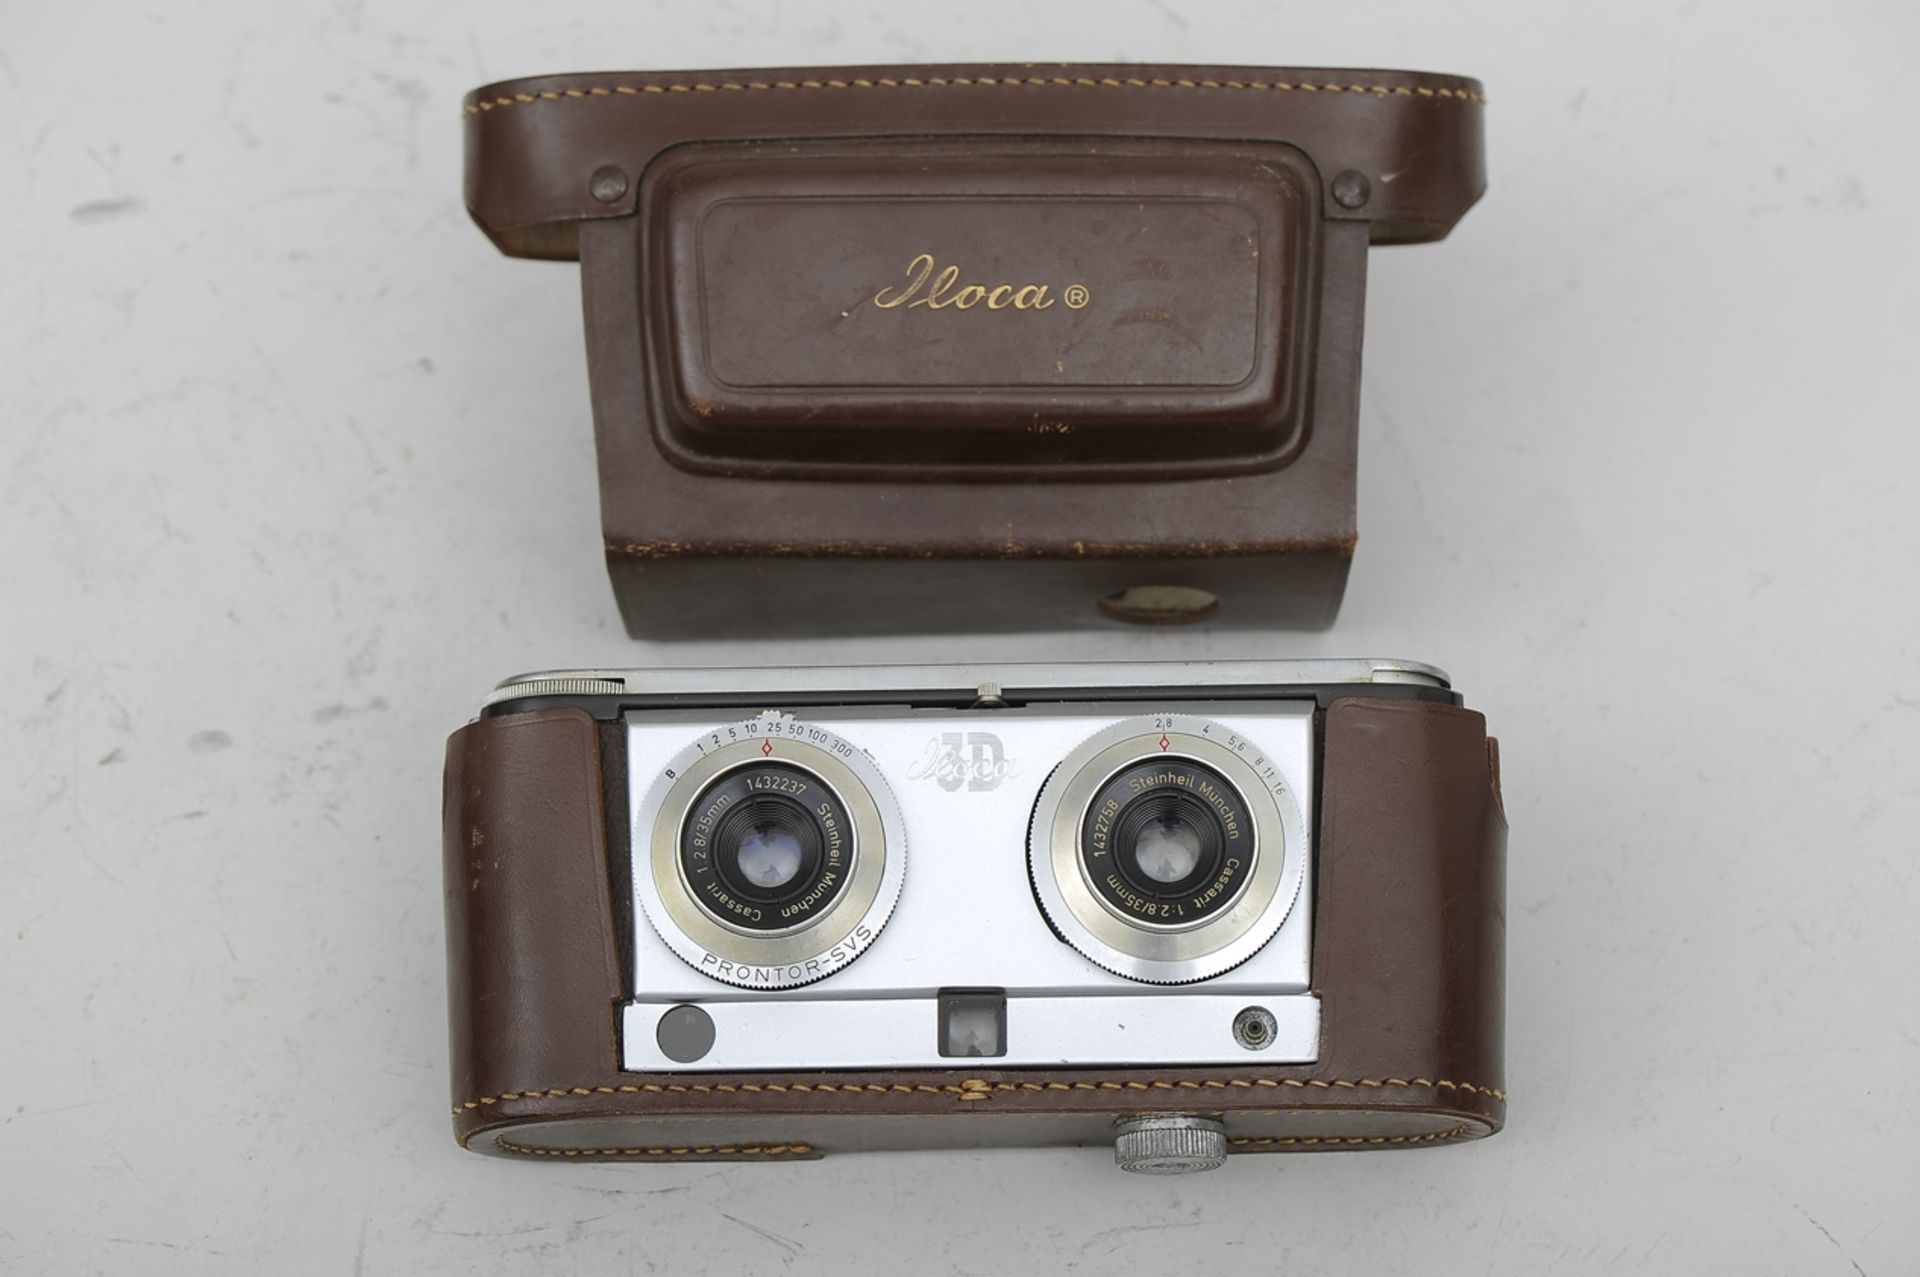 "ILOCA 3D" Stereo Rapid Kamera mit Steinheil Cassait-Objektiven 1:2,8/35 mm, No. 1432237 und 143275 - Image 6 of 7